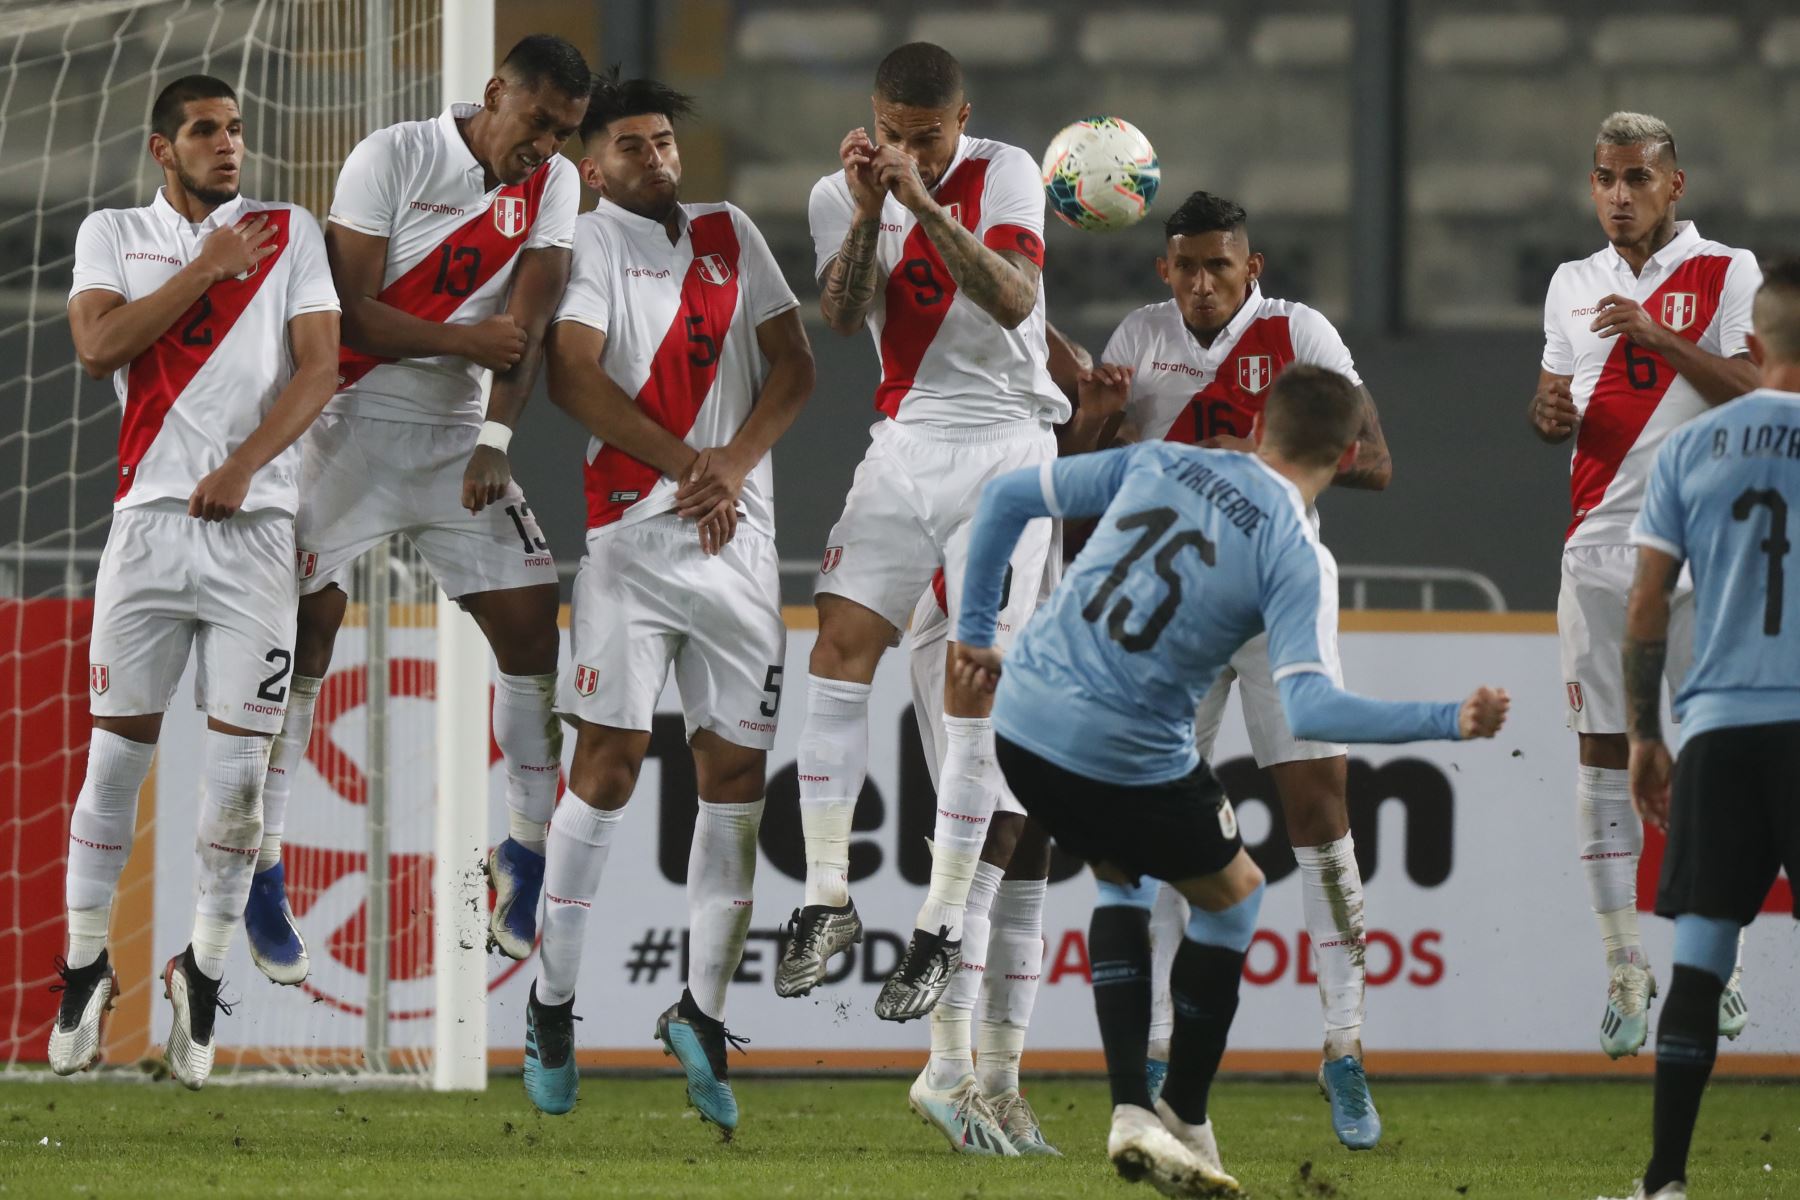 Medios uruguayos destacan empate ante Perú "con 10" y debut "soñado" de Núnez. ANDINA/Carlos Lezama